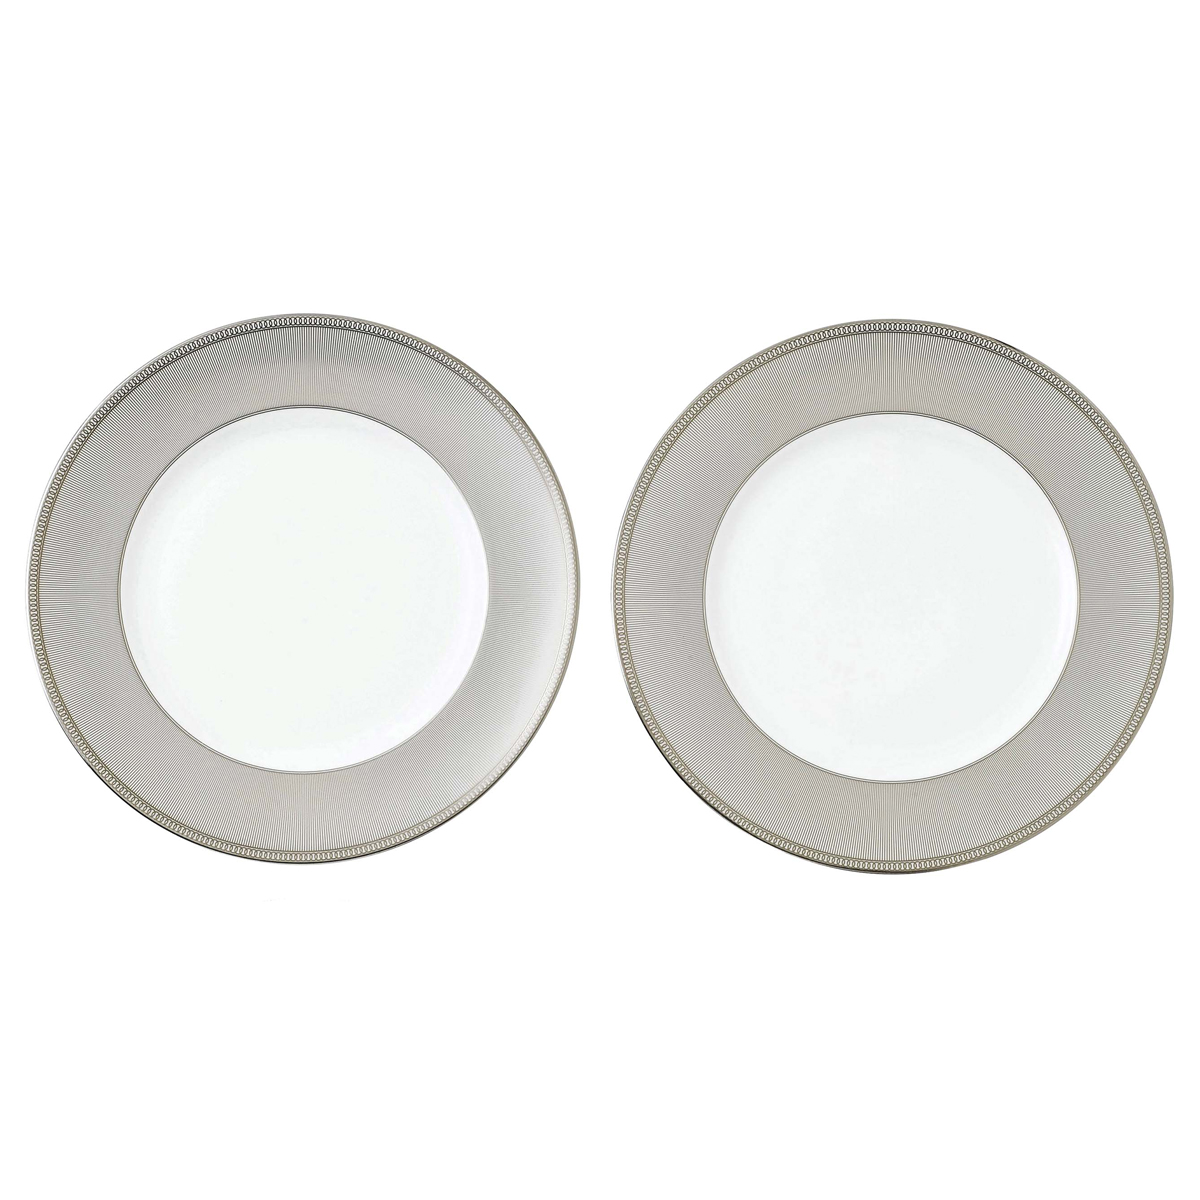 Wedgwood Winter White Dinner Plate Pair